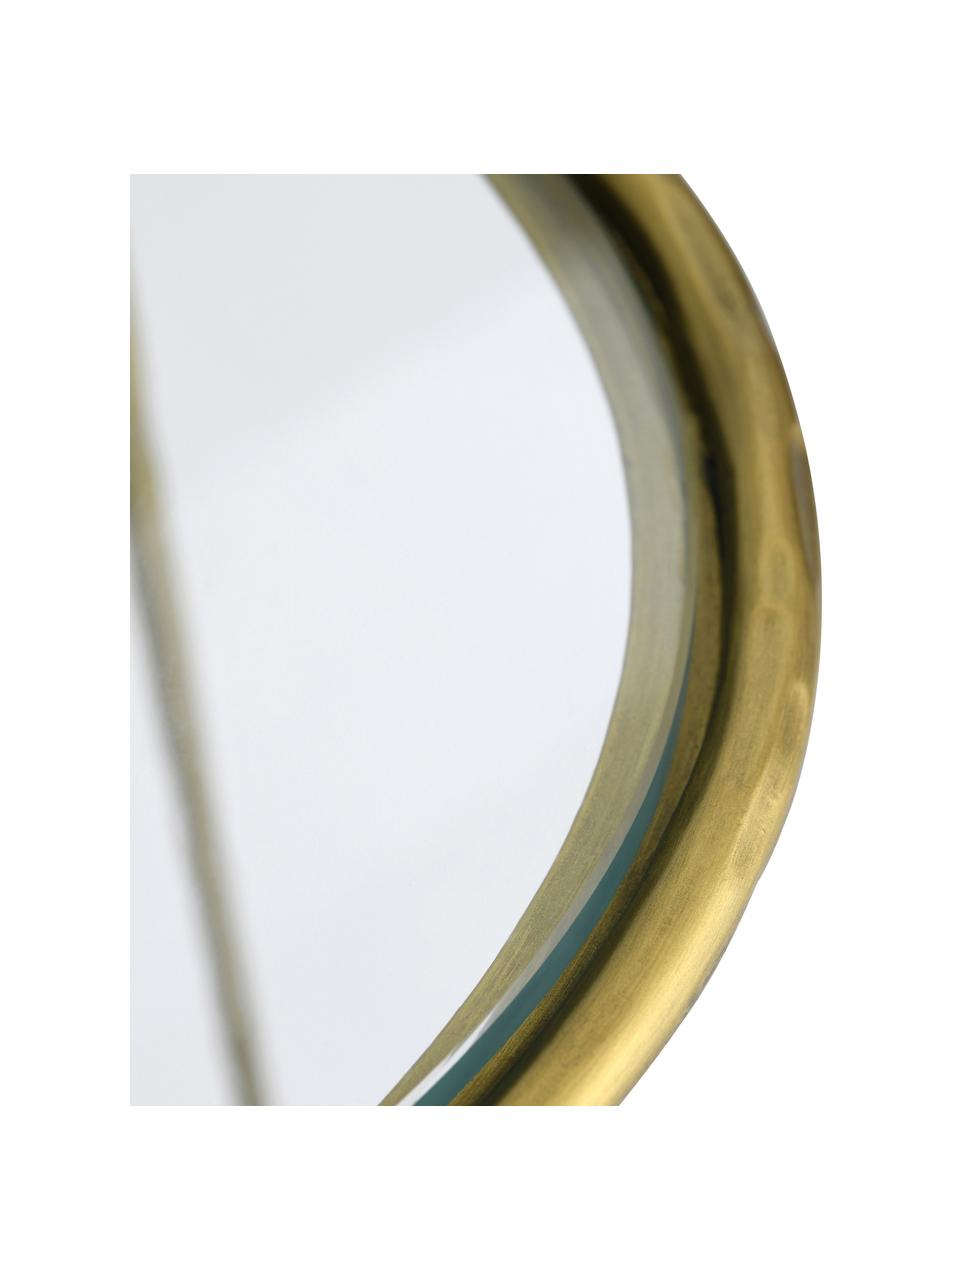 Metall-Konsole Petit in Goldfarben, Gestell: Metall, beschichtet, Goldfarben,Transparent, B 112 x H 82 cm